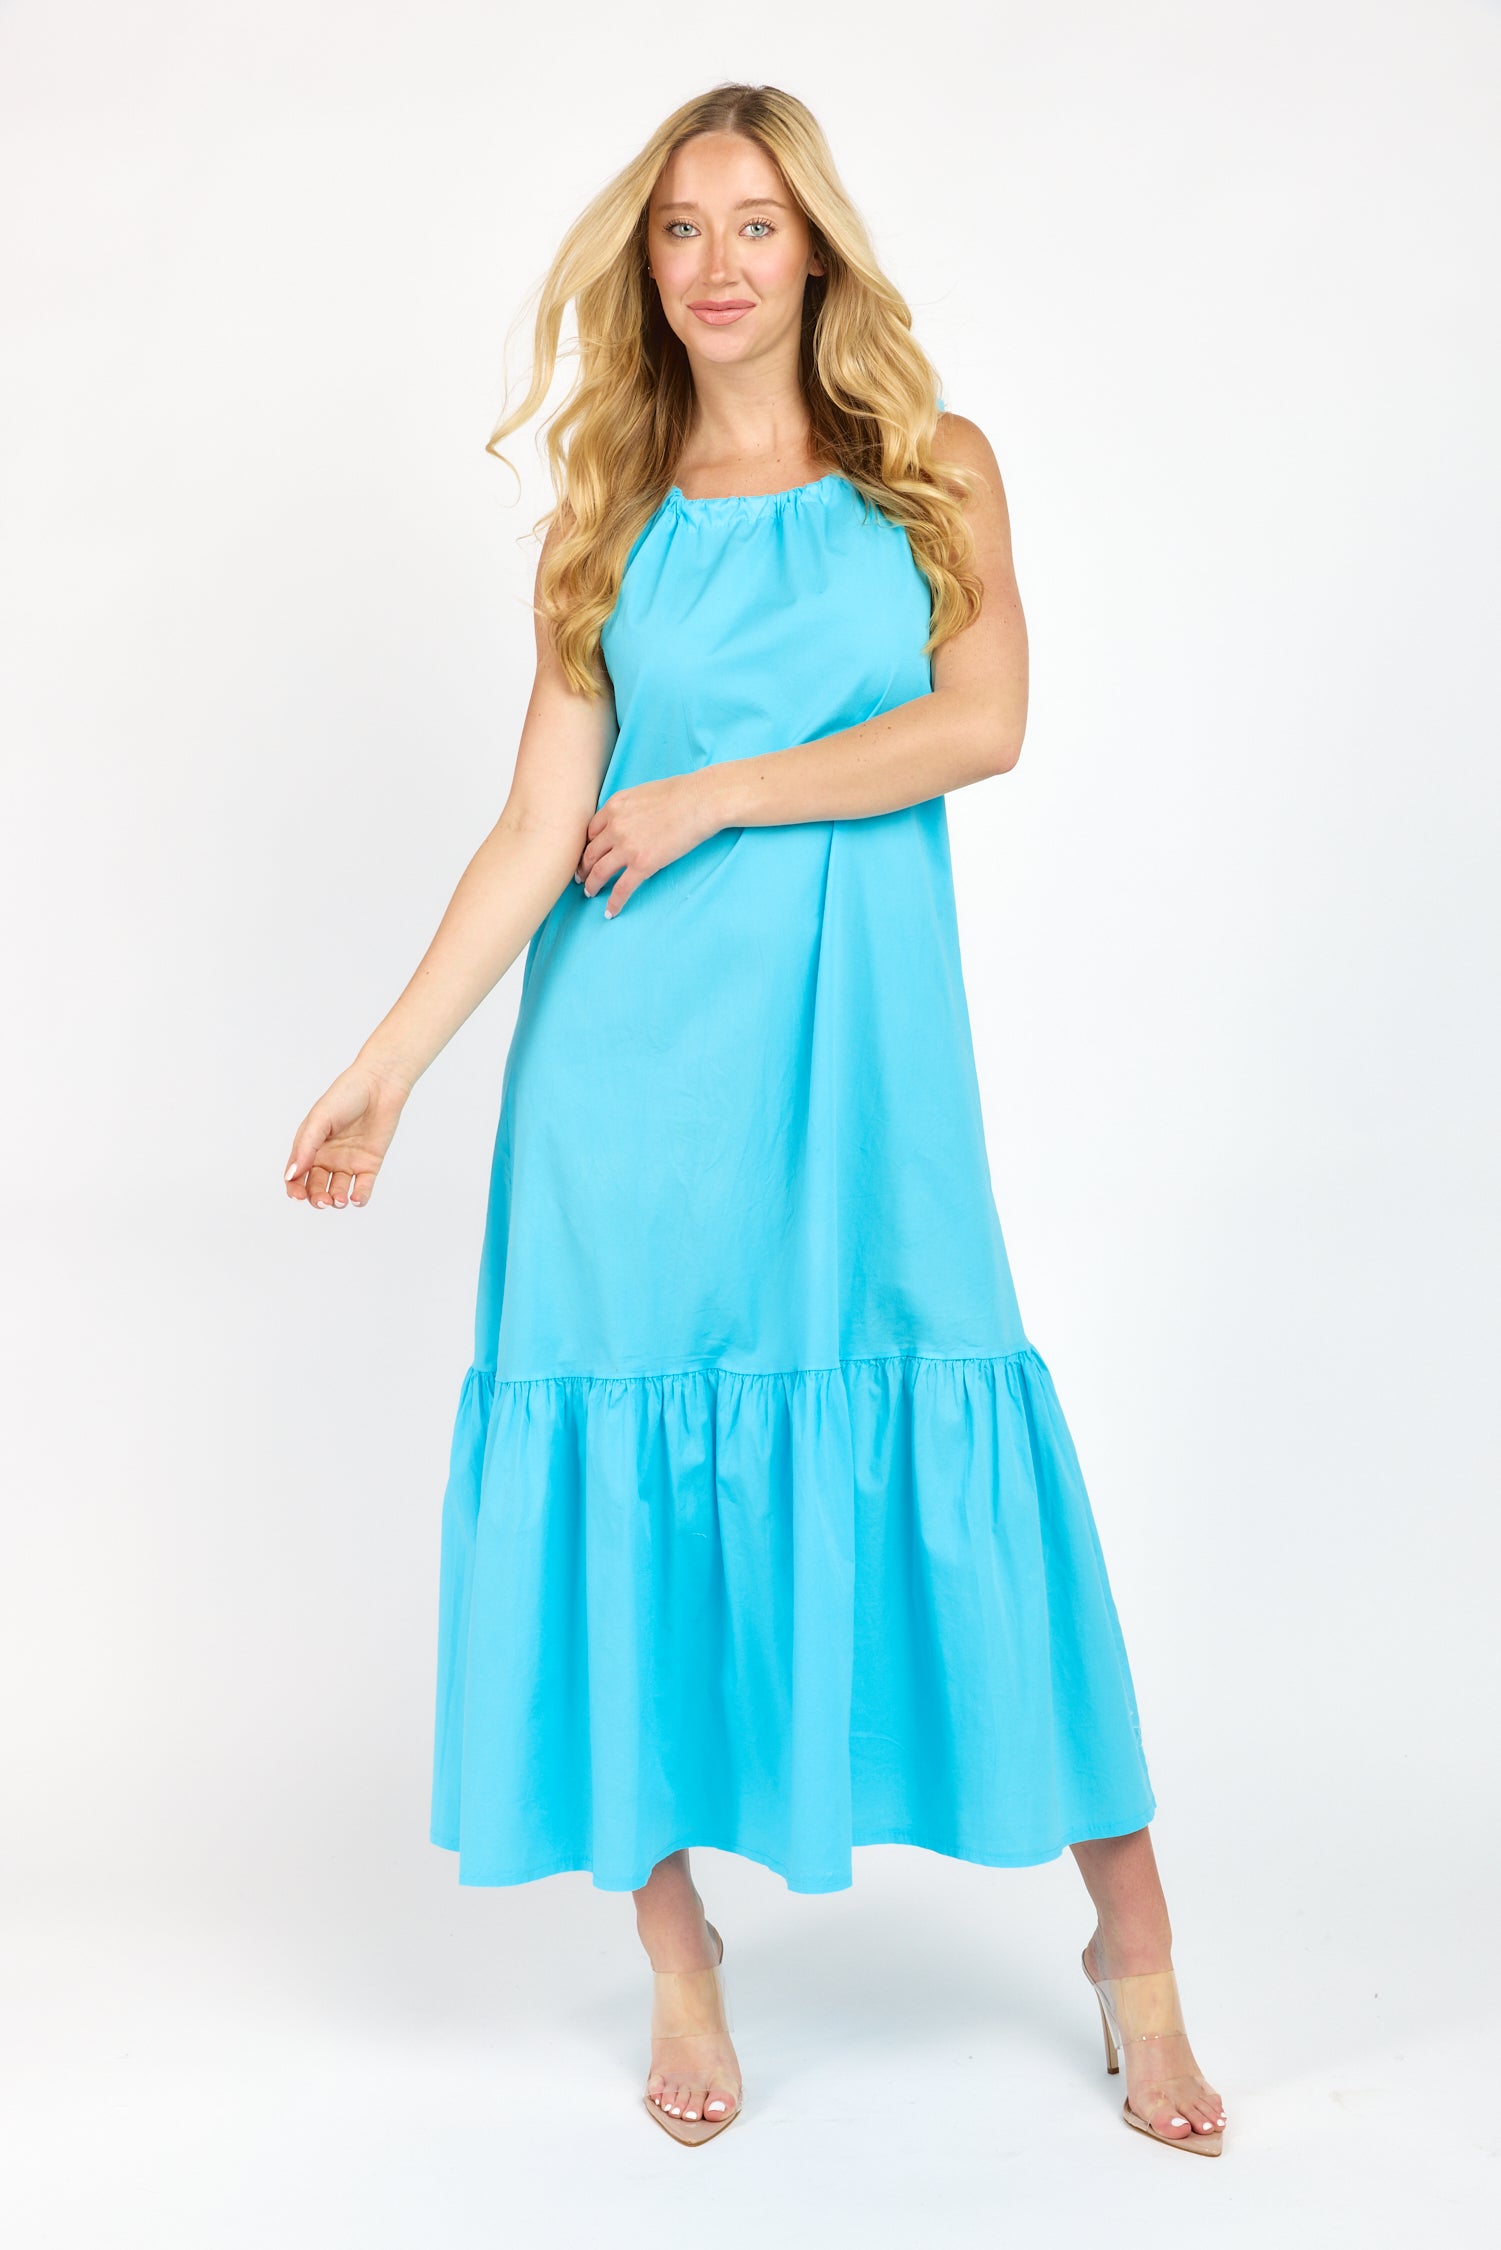 SAMANTHA | Dresses | On Sale | shop-sofia